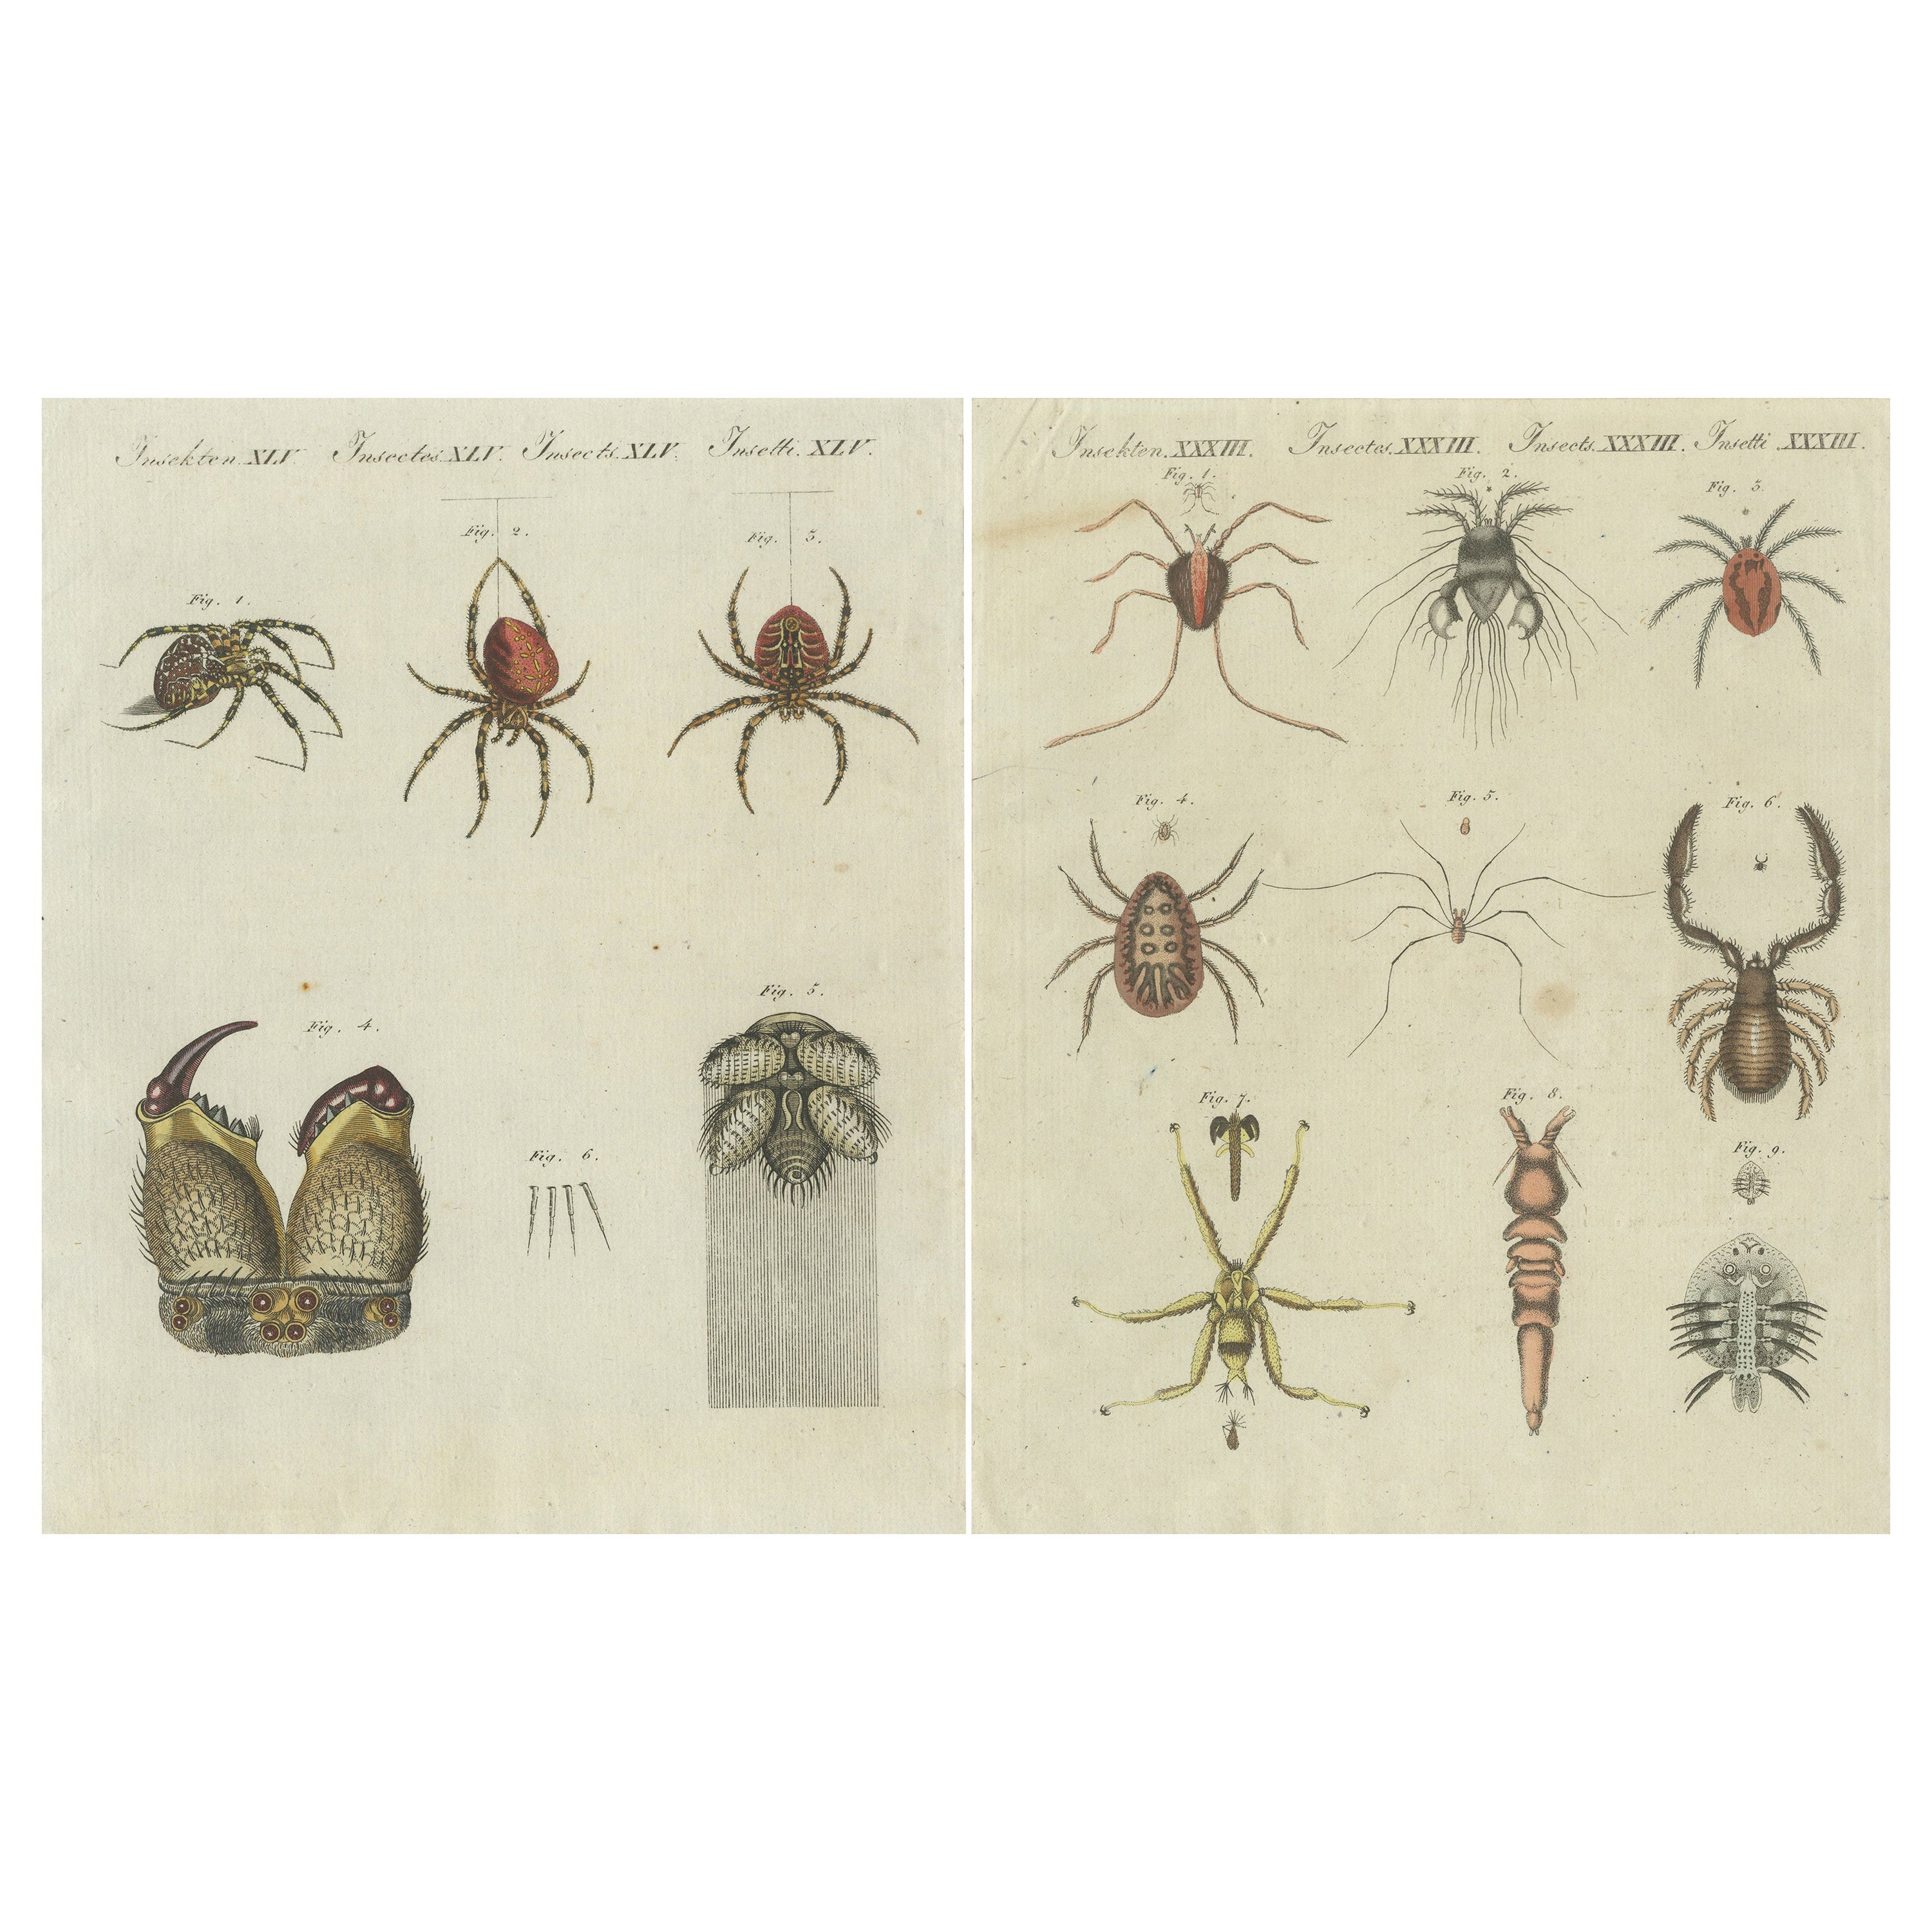 Conjunto de dos grabados antiguos de varios insectos, incluidos arañas y ácaros